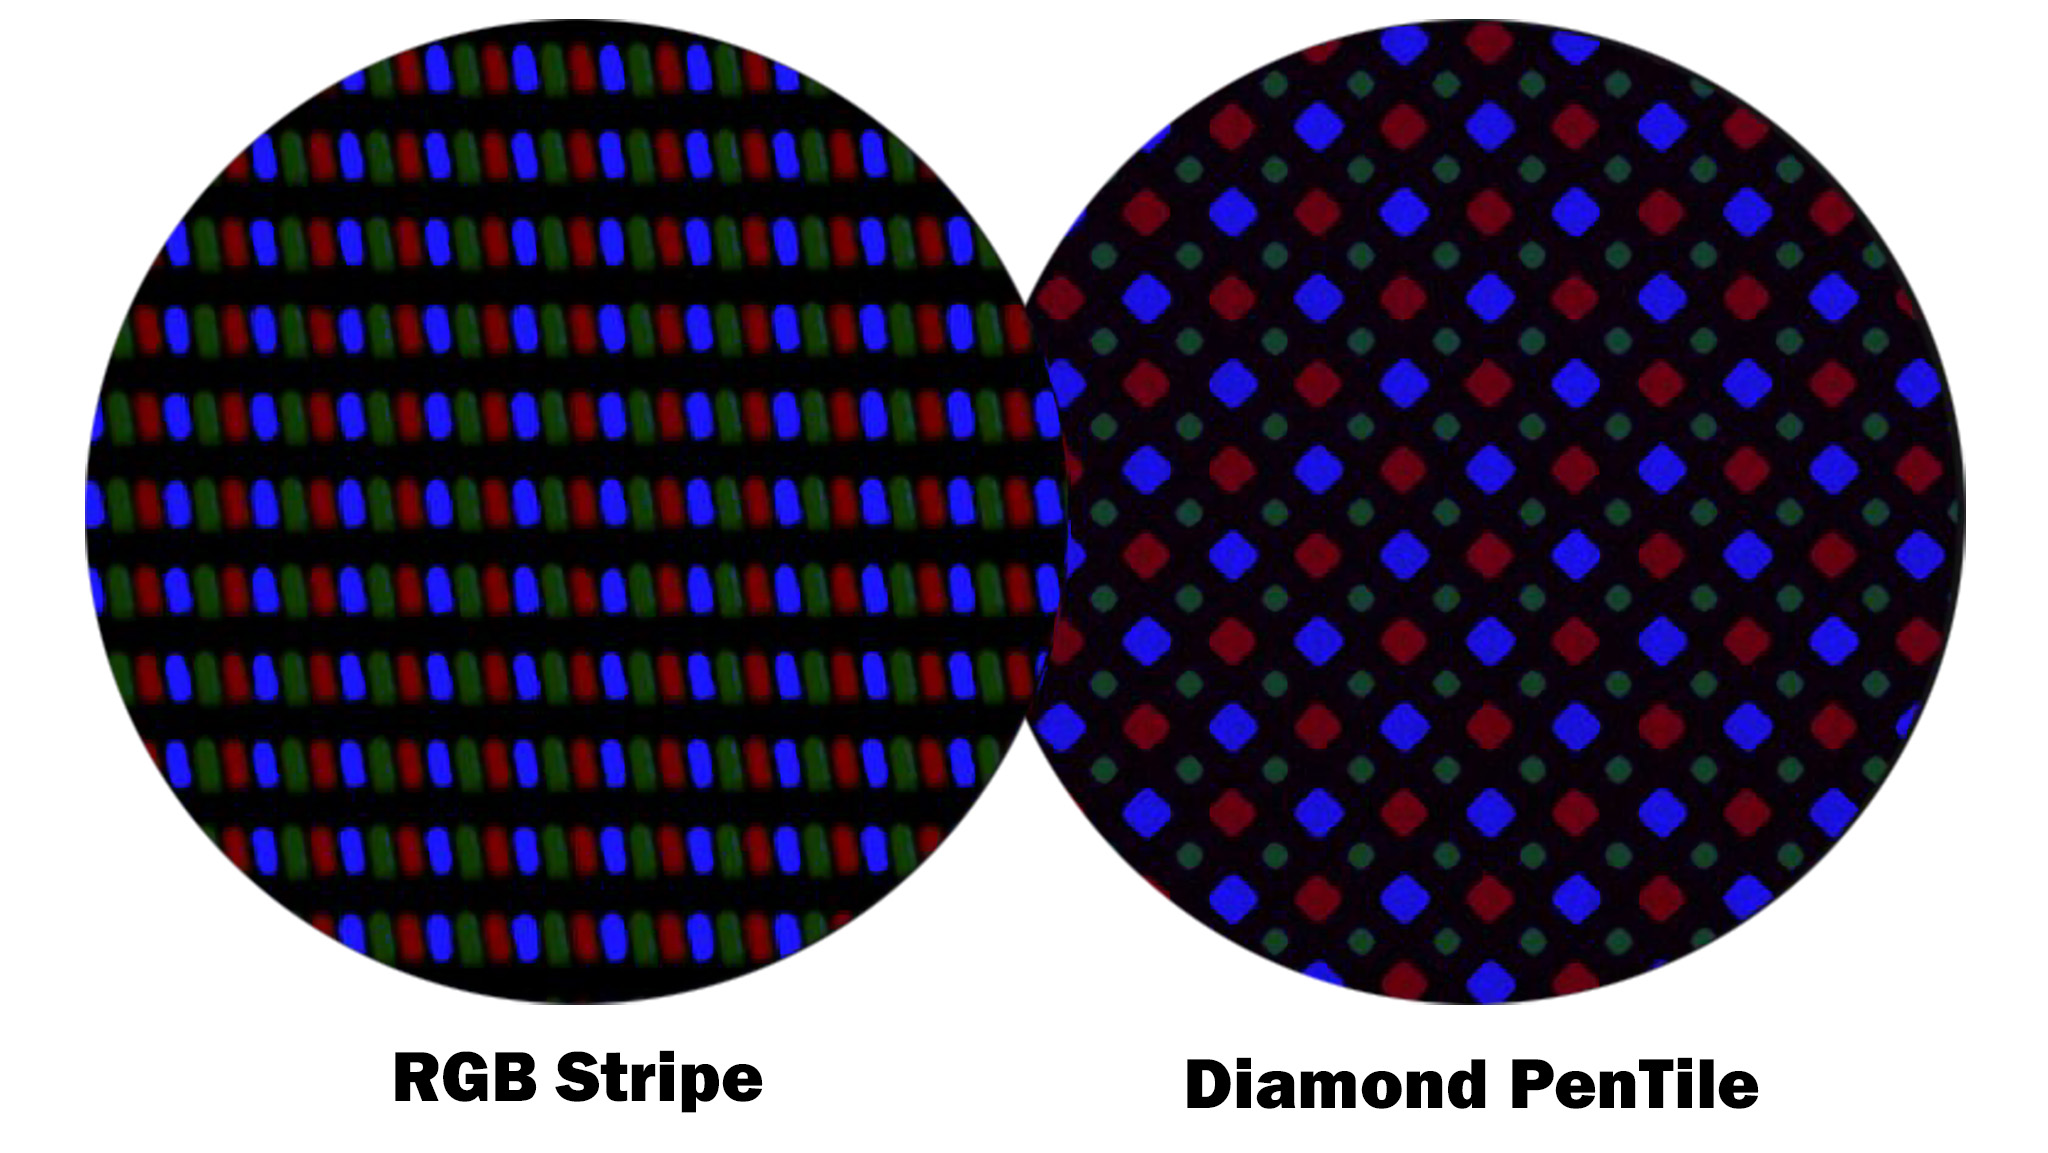 مقارنة لوحة RGB Stripe الخاصة بـ Valve Index مع لوحة Diamond PenTile OLED